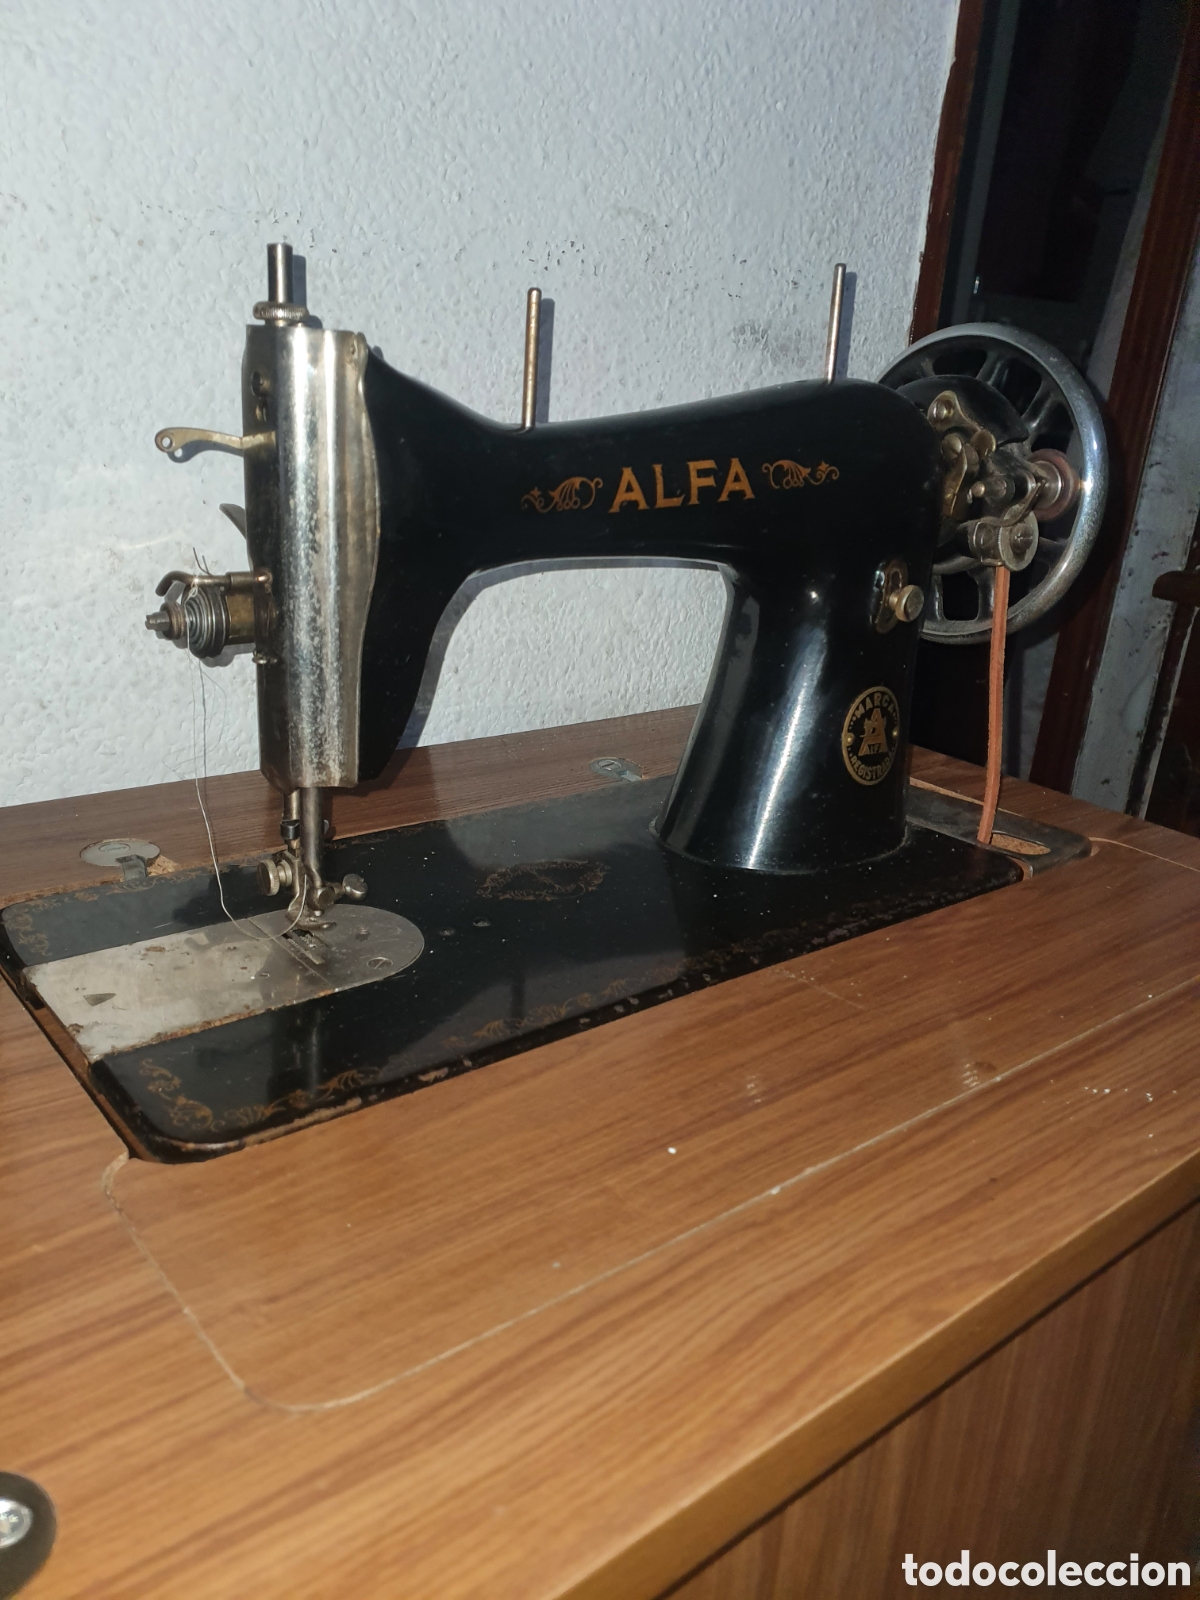 maquina de coser alfa de los años 60-70 - Buy Antique sewing machines Alfa  on todocoleccion